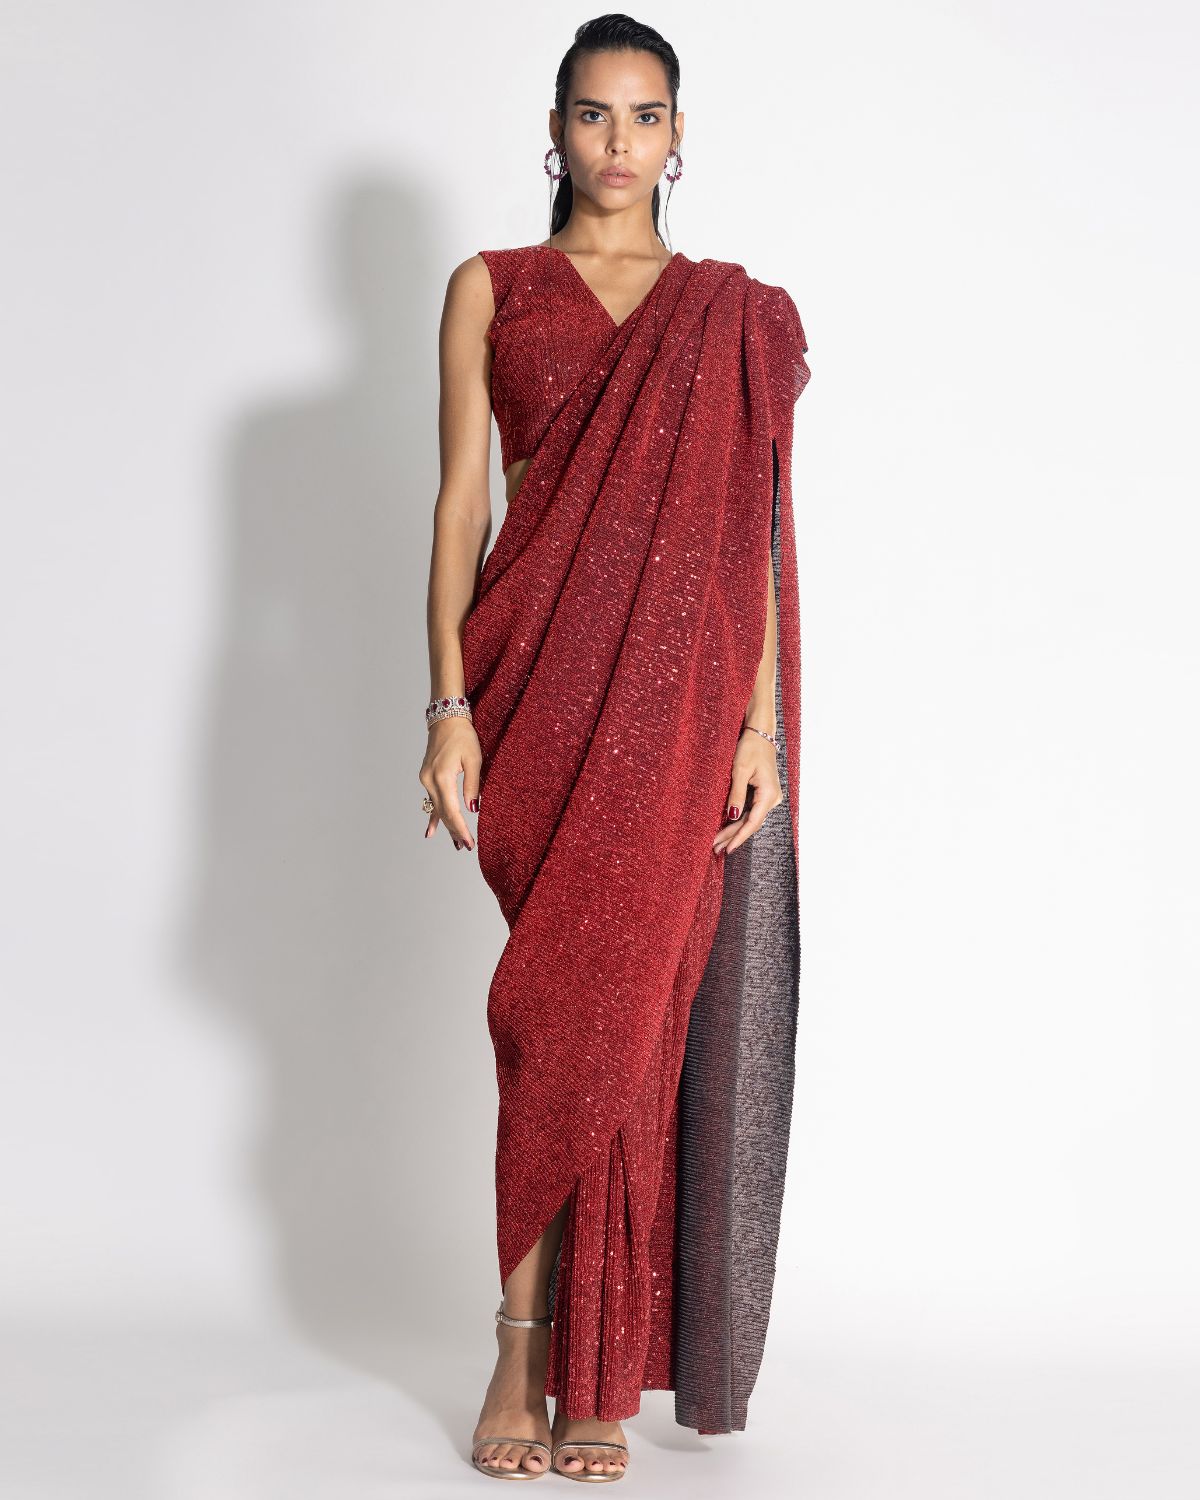 Sequins Sari With Top | 431-88